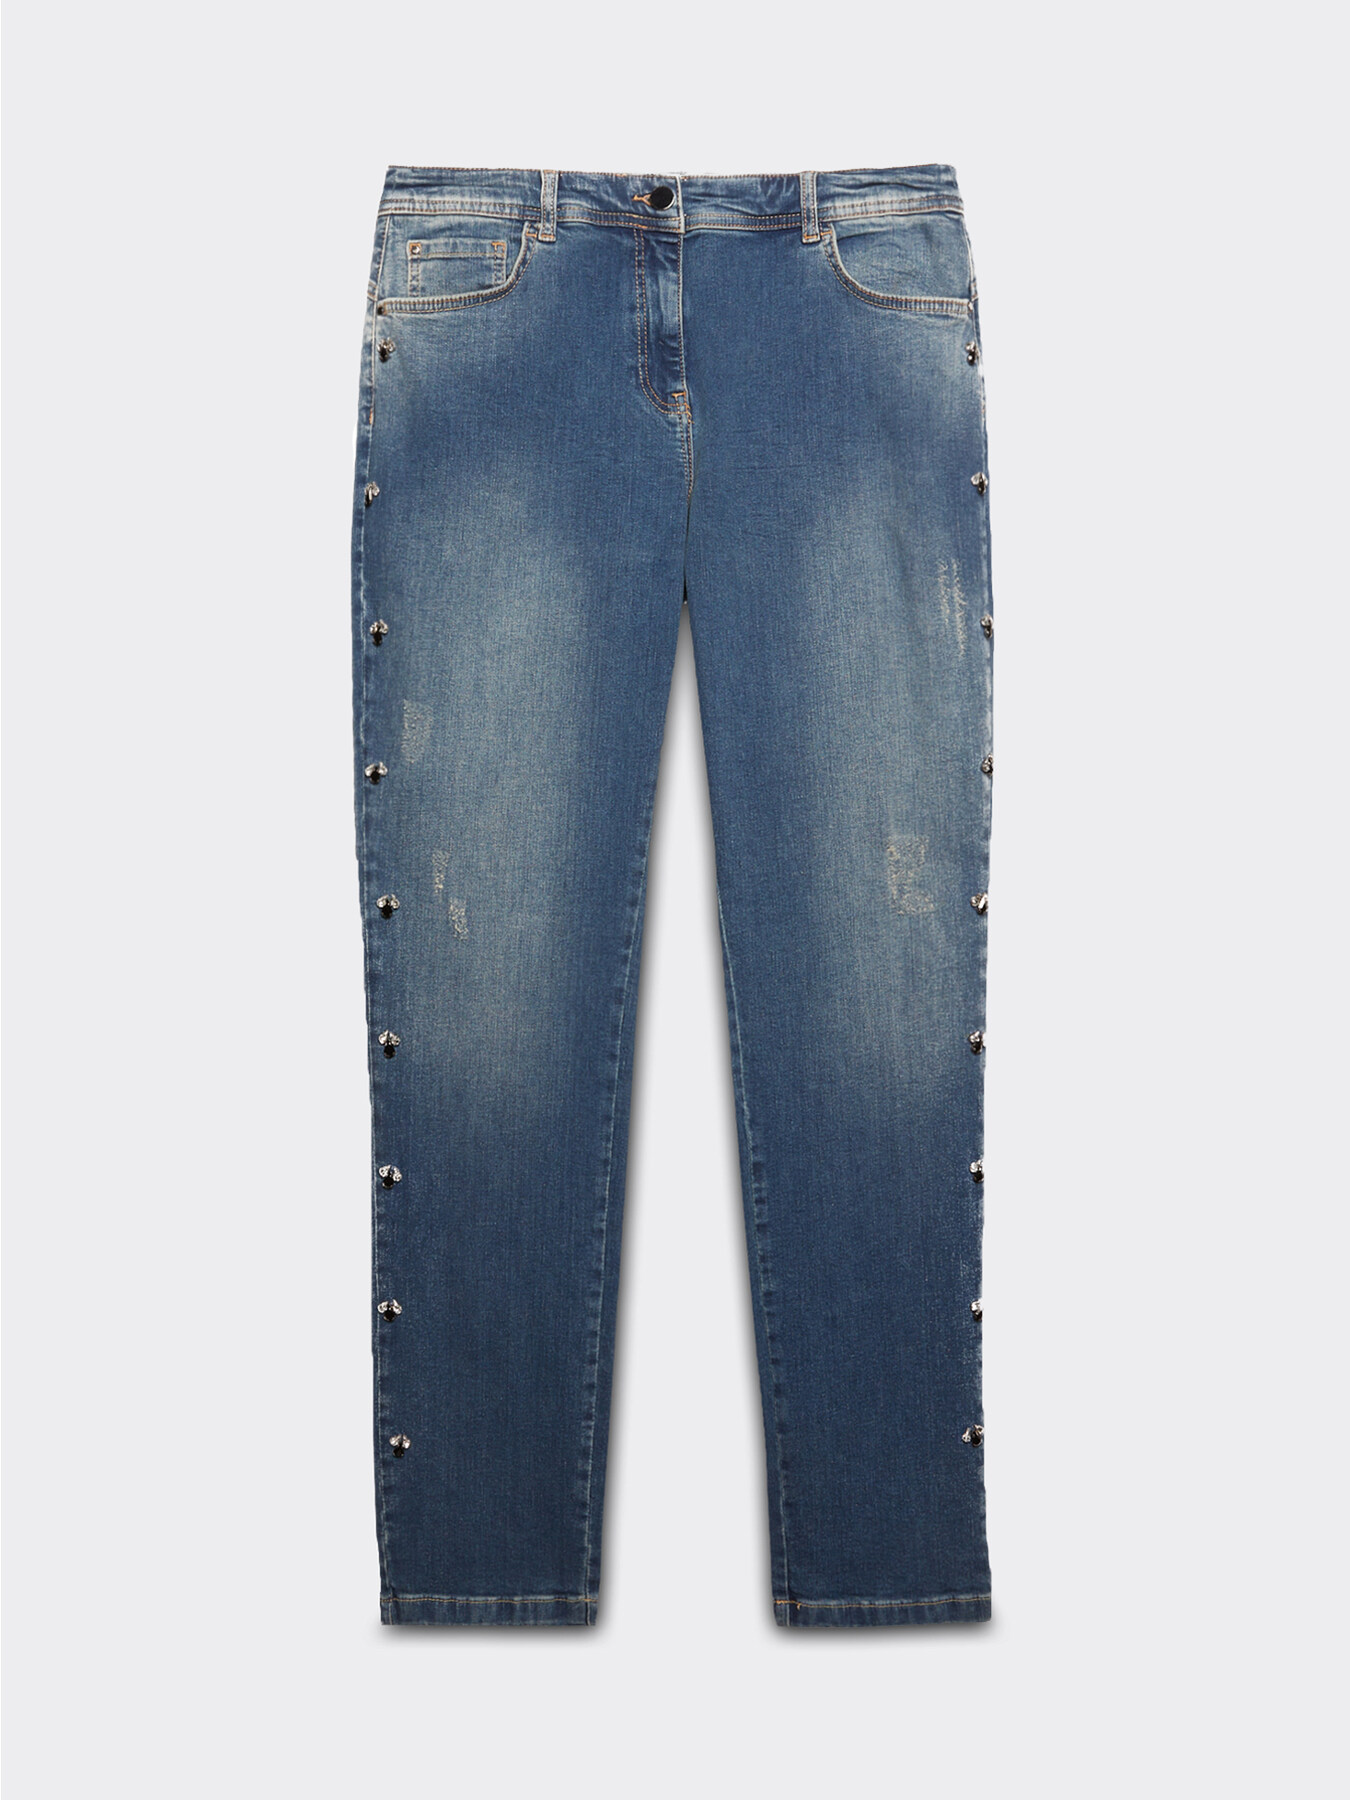 Jeans regulares bordados image number 0